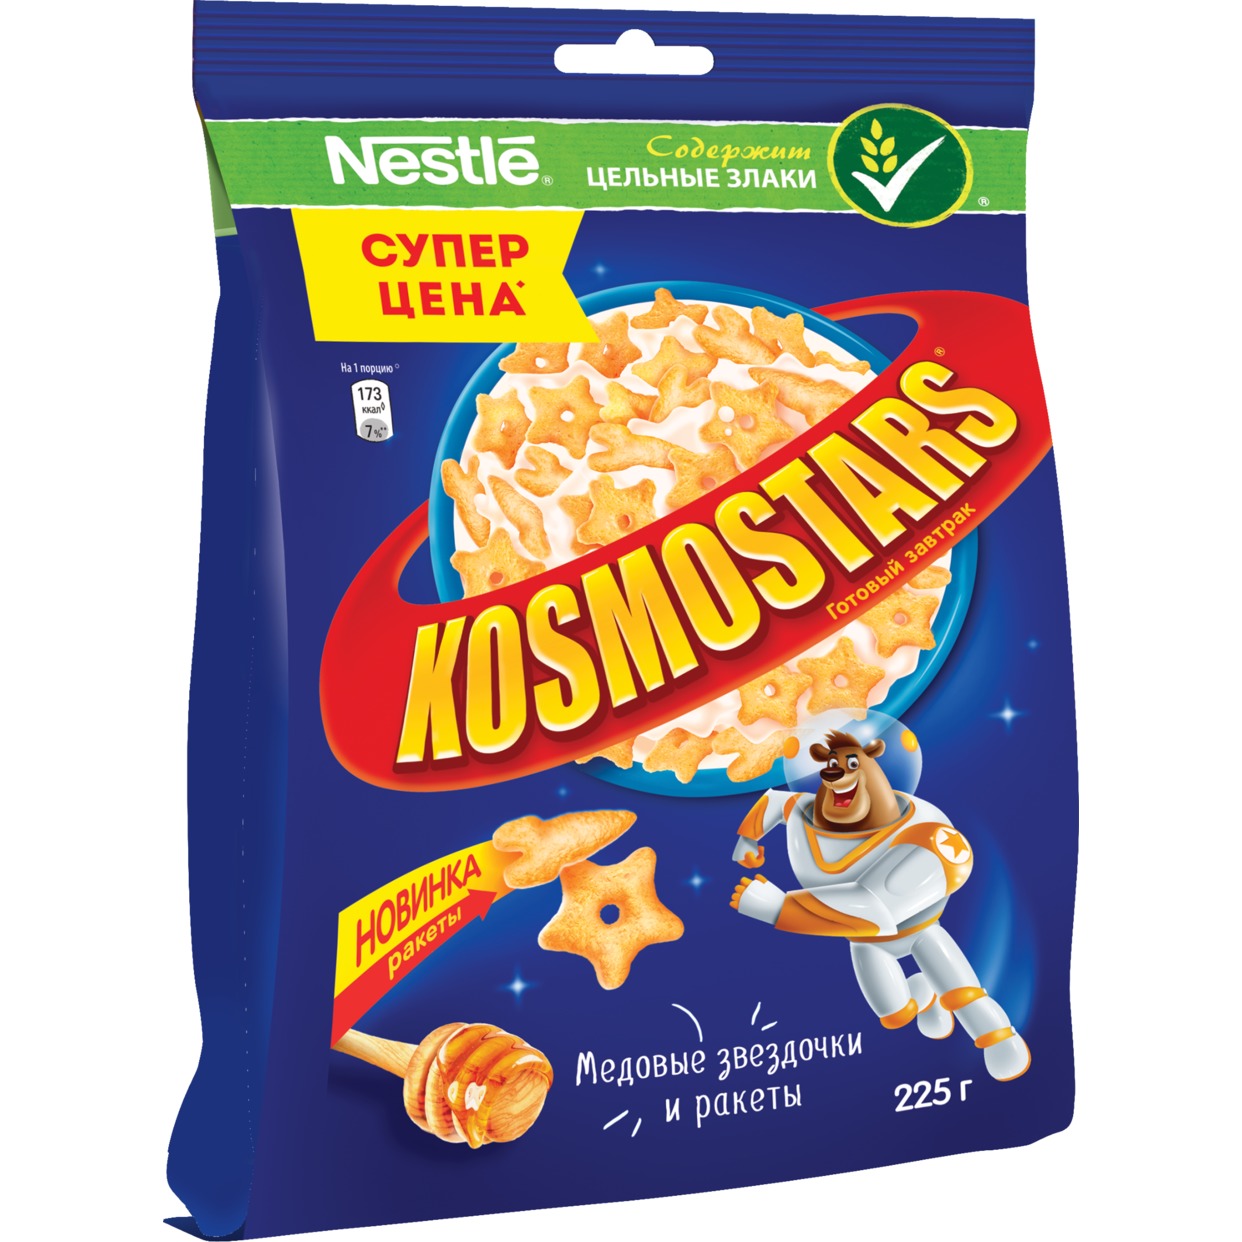 Завтрак медовый Kosmostars, 225 г по акции в Пятерочке